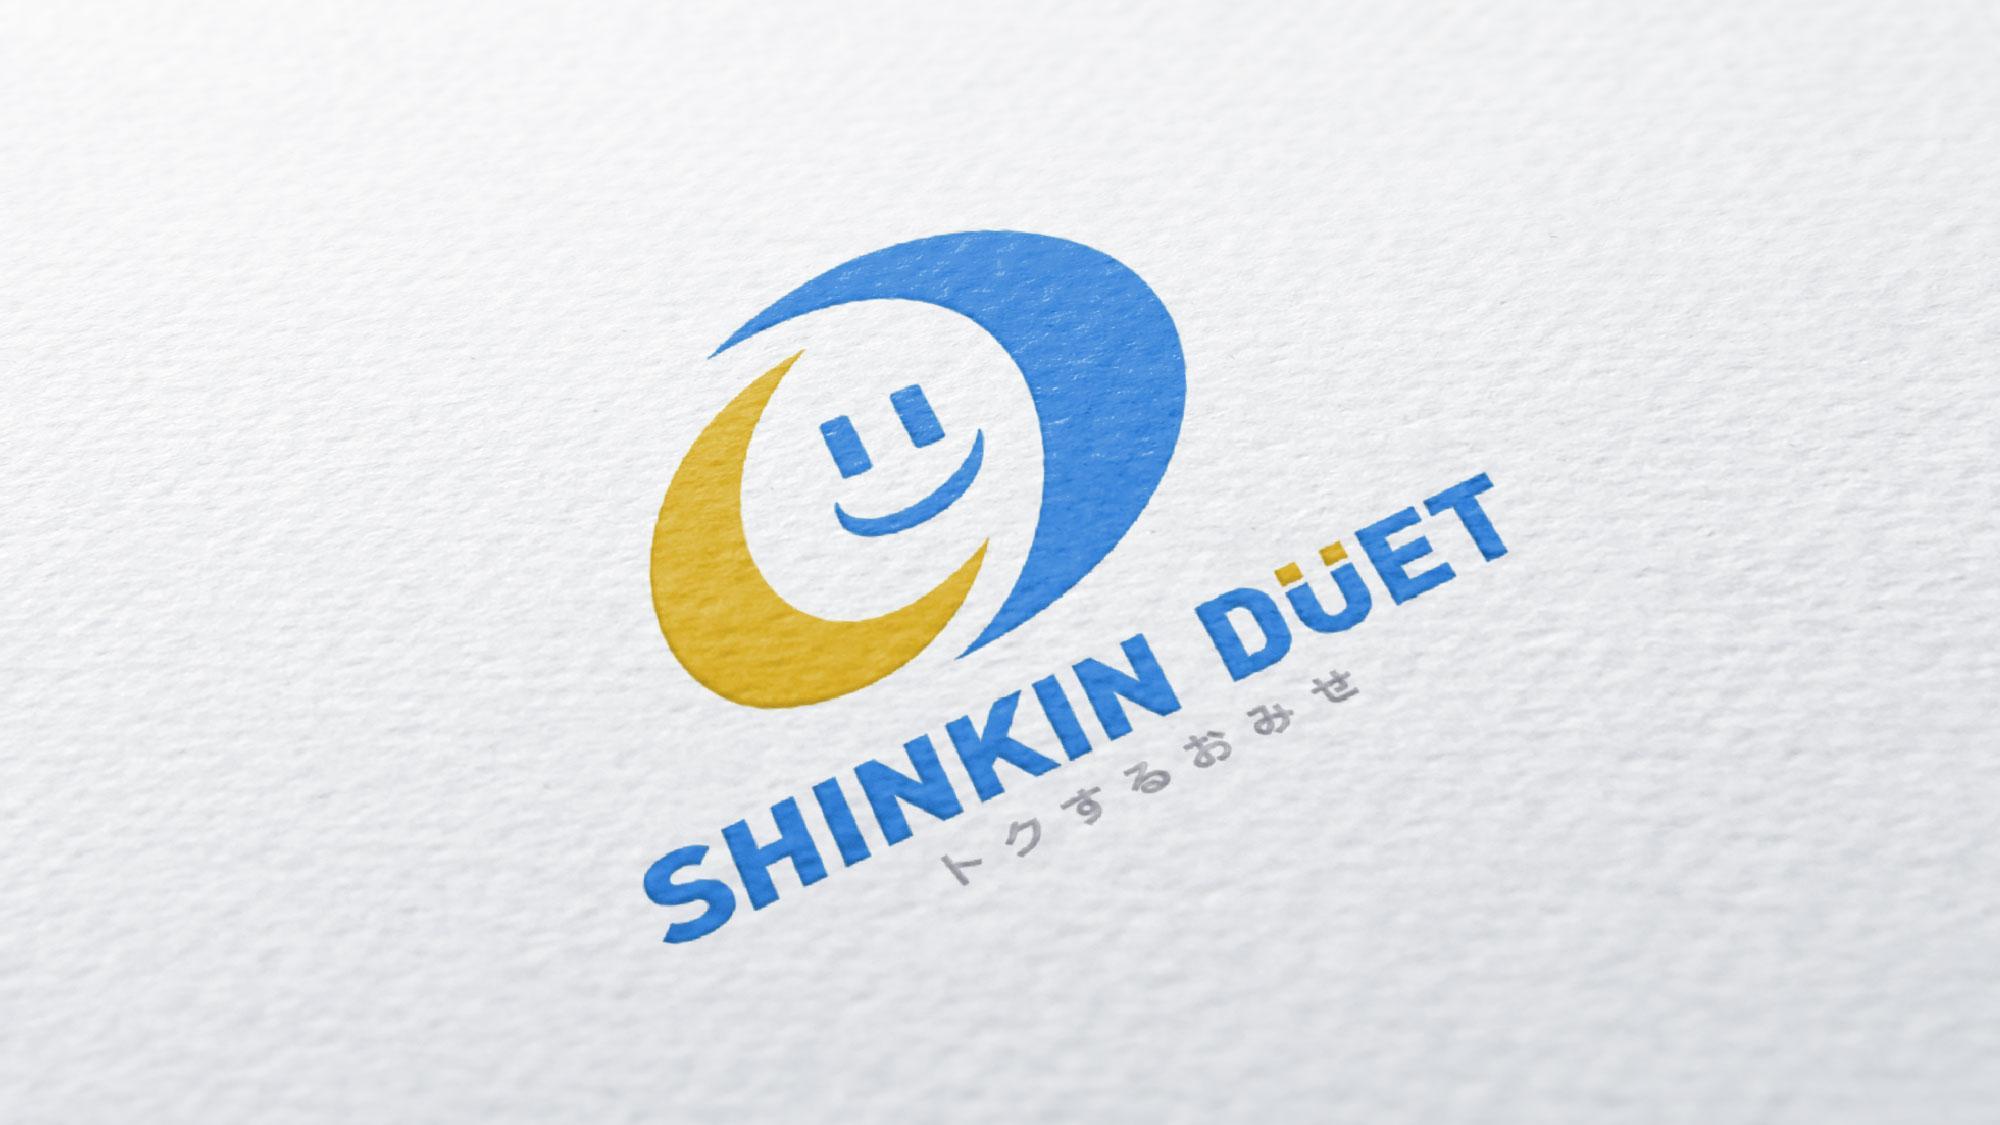 Credit Card Company Logo - Credit Card Company Logo. CHUBU SHINKIN BANK CARD Co., Ltd